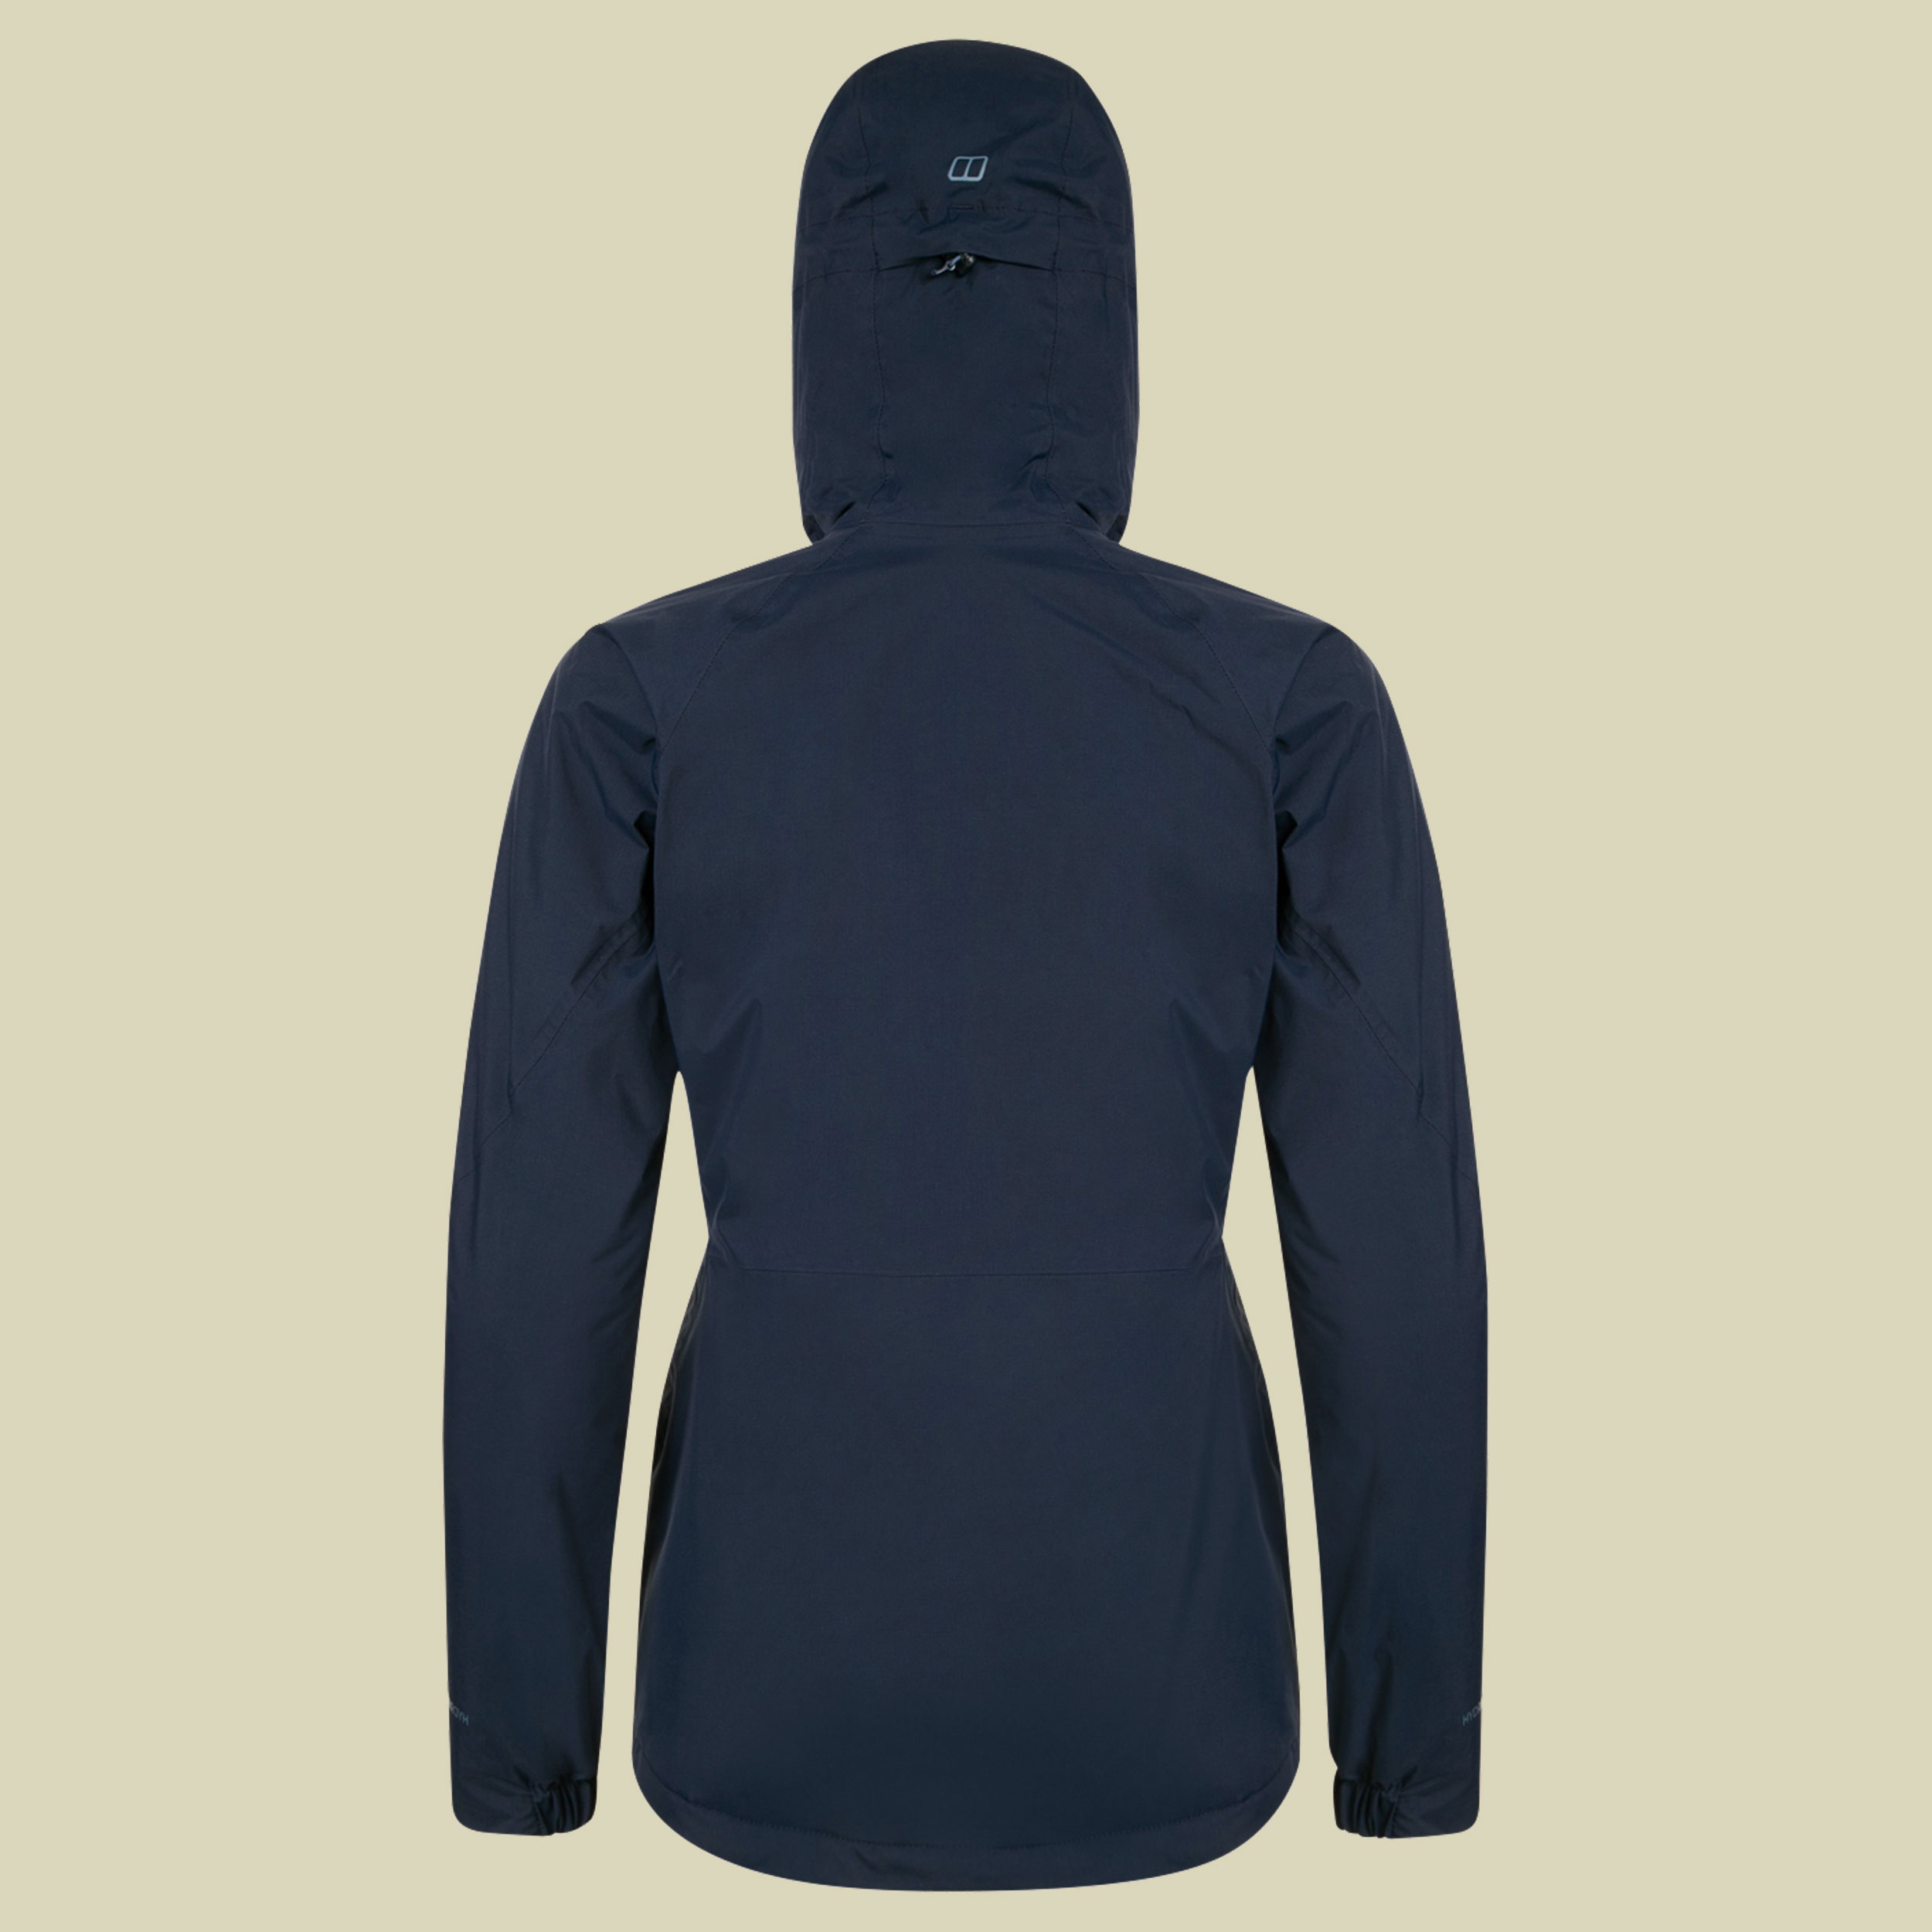 Deluge Pro Insulated Jacket Women Größe 42 (16) Farbe dark blue/dark blue